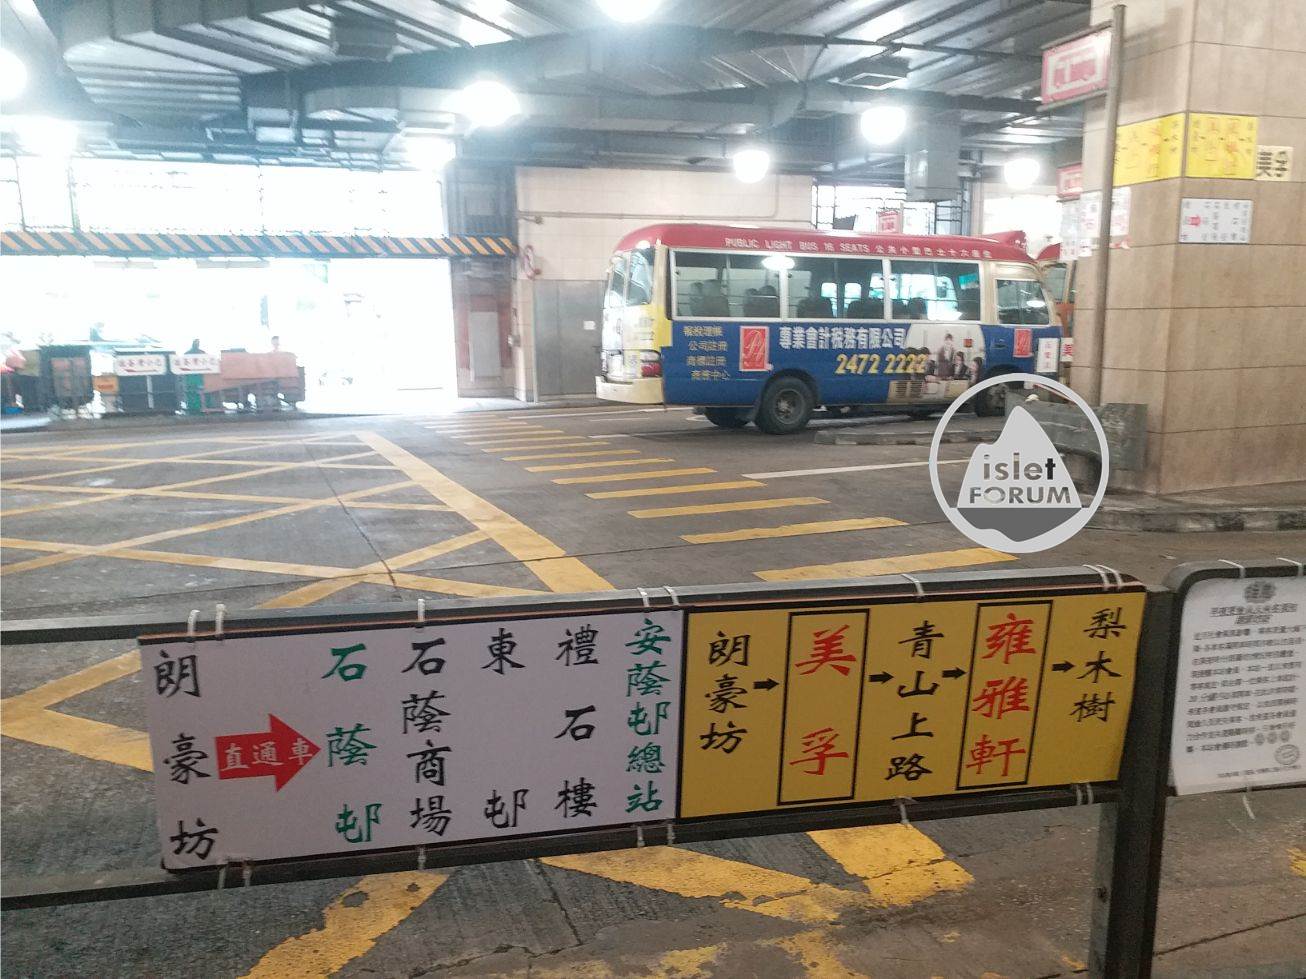 旺角(朗豪坊) 總站Mong Kok (Langham Place) Minibus Terminus (1).jpg